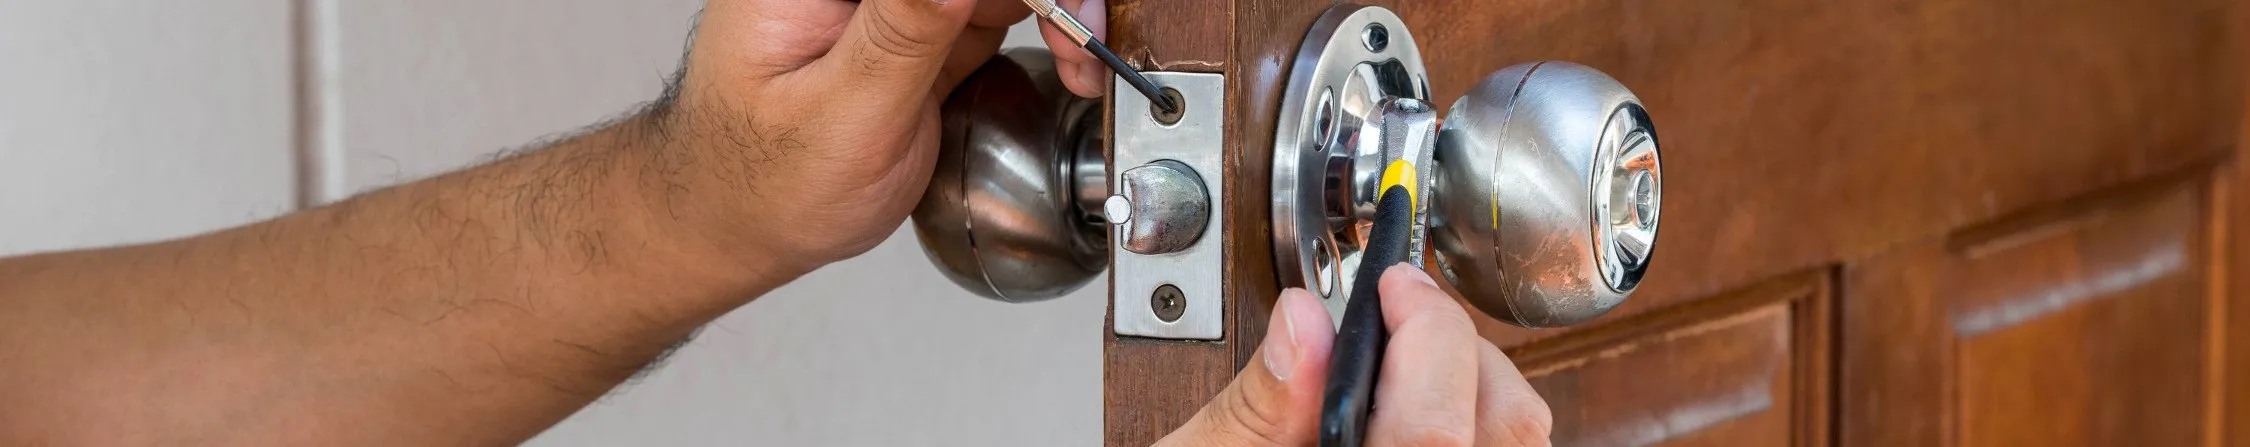 cerrajero puerta hori - Cambiar Cerradura Picassent – Instalación, Reparación y Abrir